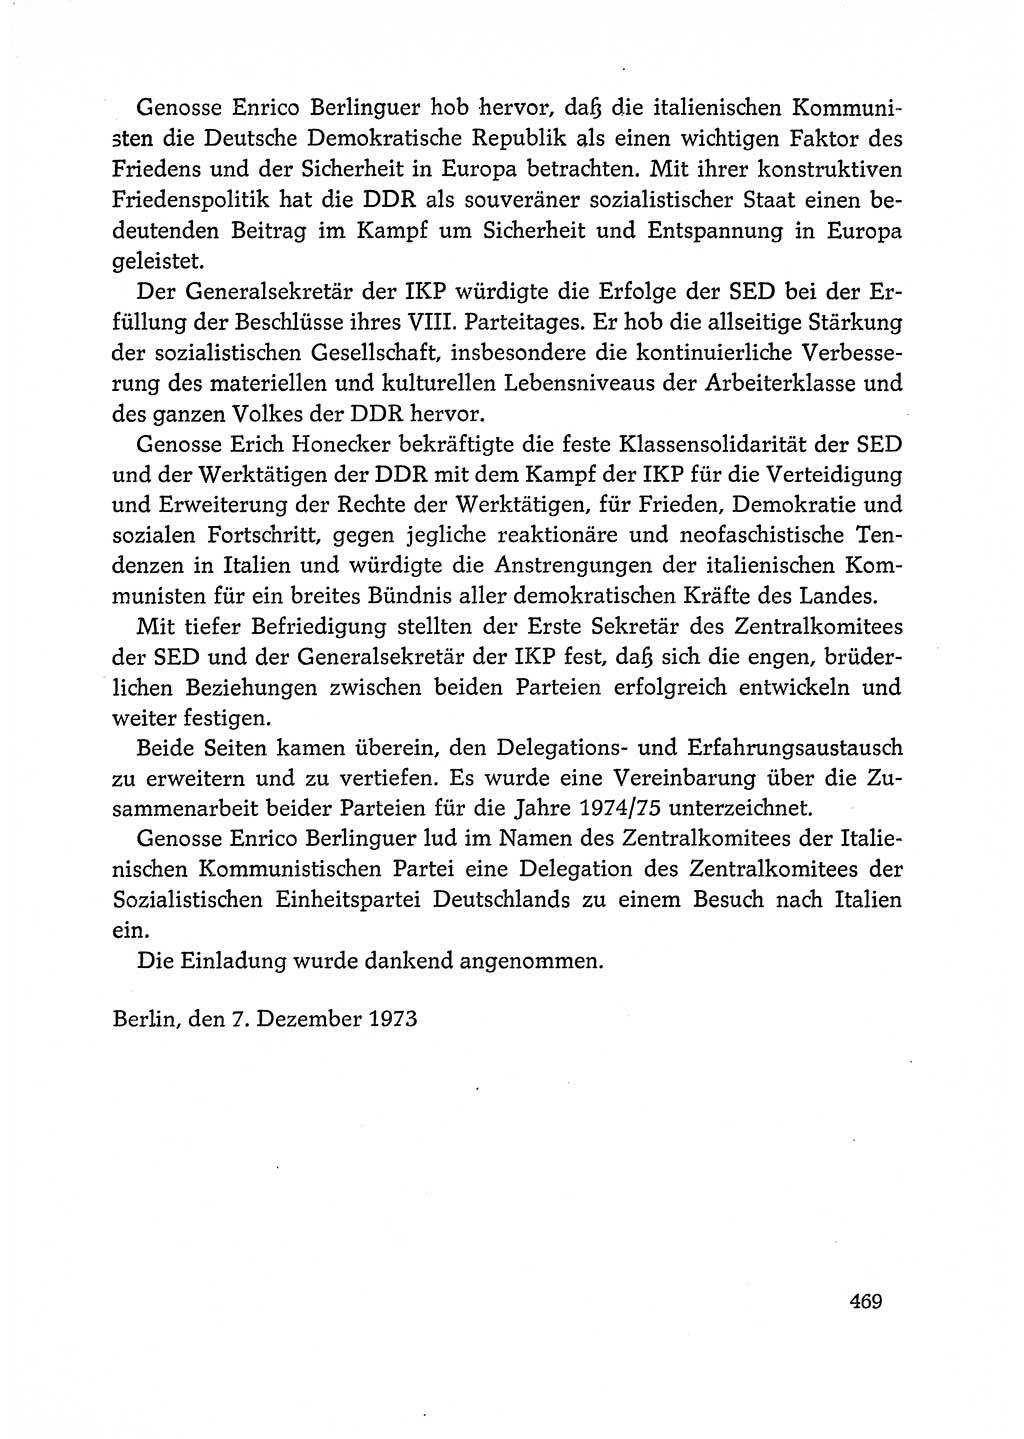 Dokumente der Sozialistischen Einheitspartei Deutschlands (SED) [Deutsche Demokratische Republik (DDR)] 1972-1973, Seite 469 (Dok. SED DDR 1972-1973, S. 469)